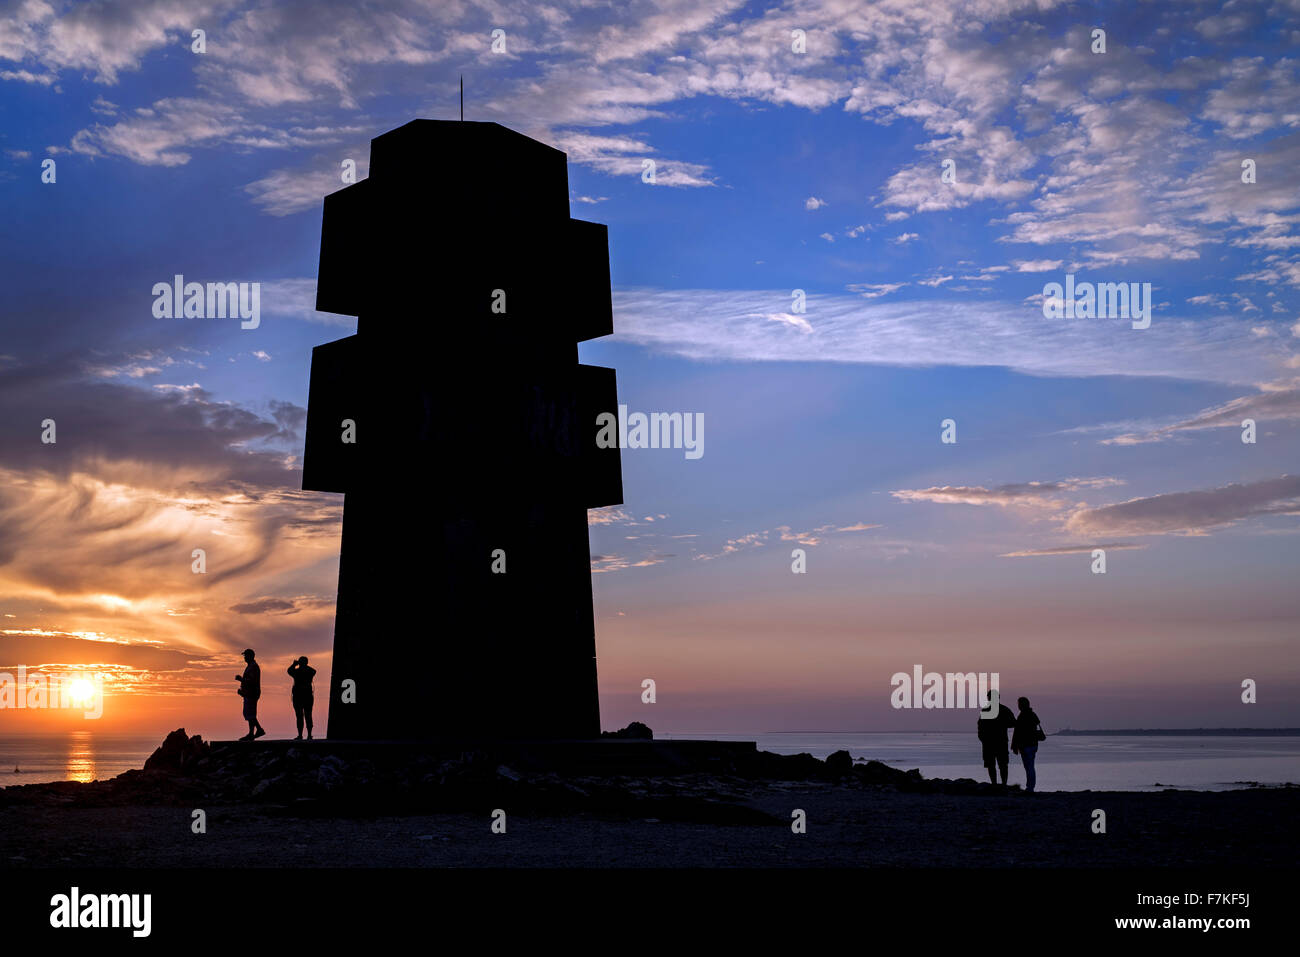 Les touristes visitant le monument aux Bretons de la France Libre / Cross de Pen Hir au coucher du soleil, de la pointe de Pen-Hir, Bretagne, France Banque D'Images